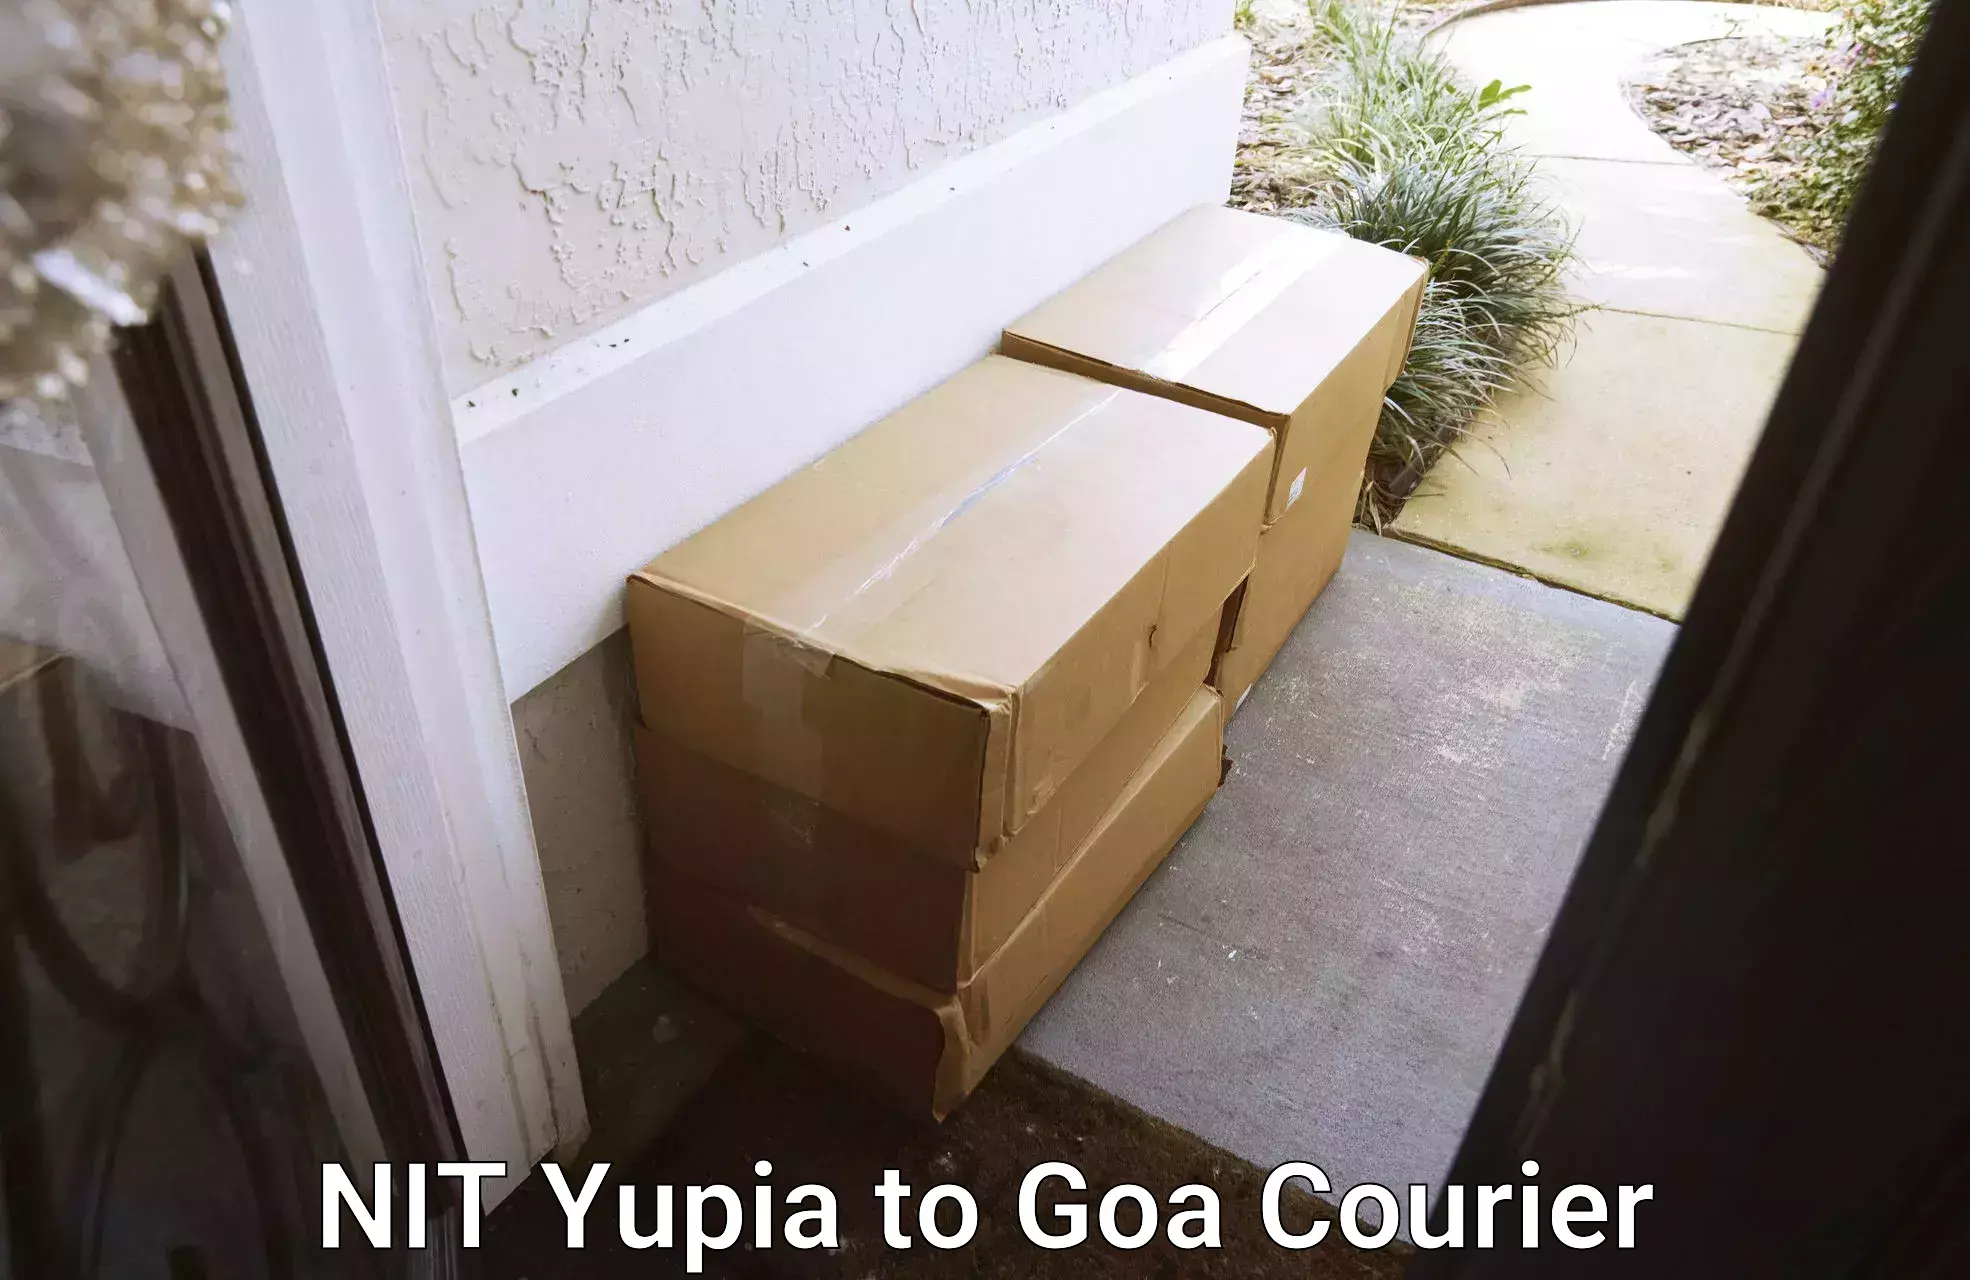 Local delivery service NIT Yupia to Goa